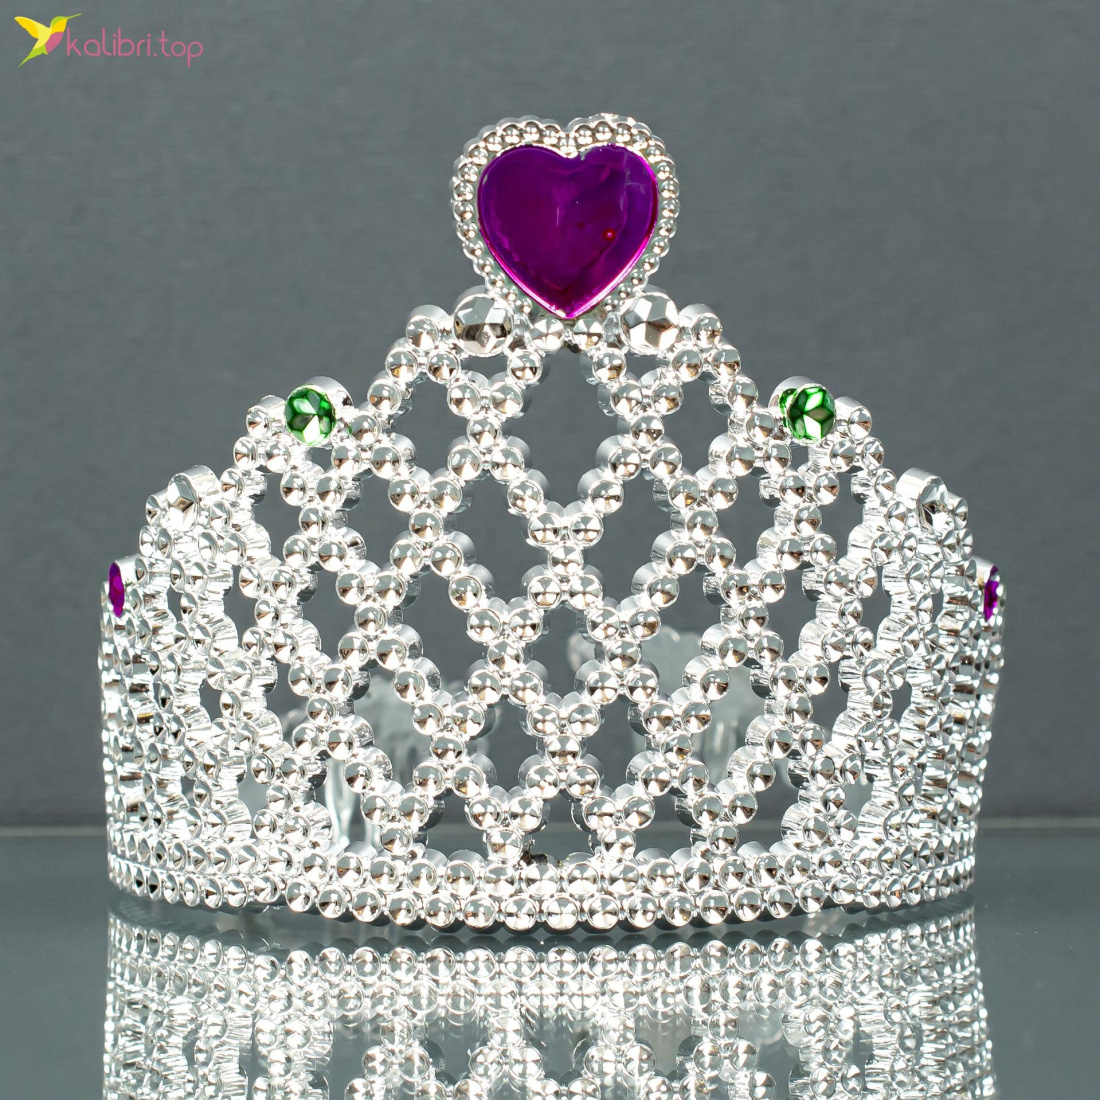 Новогодняя корона принцессы ККР-177 оптом фото 01